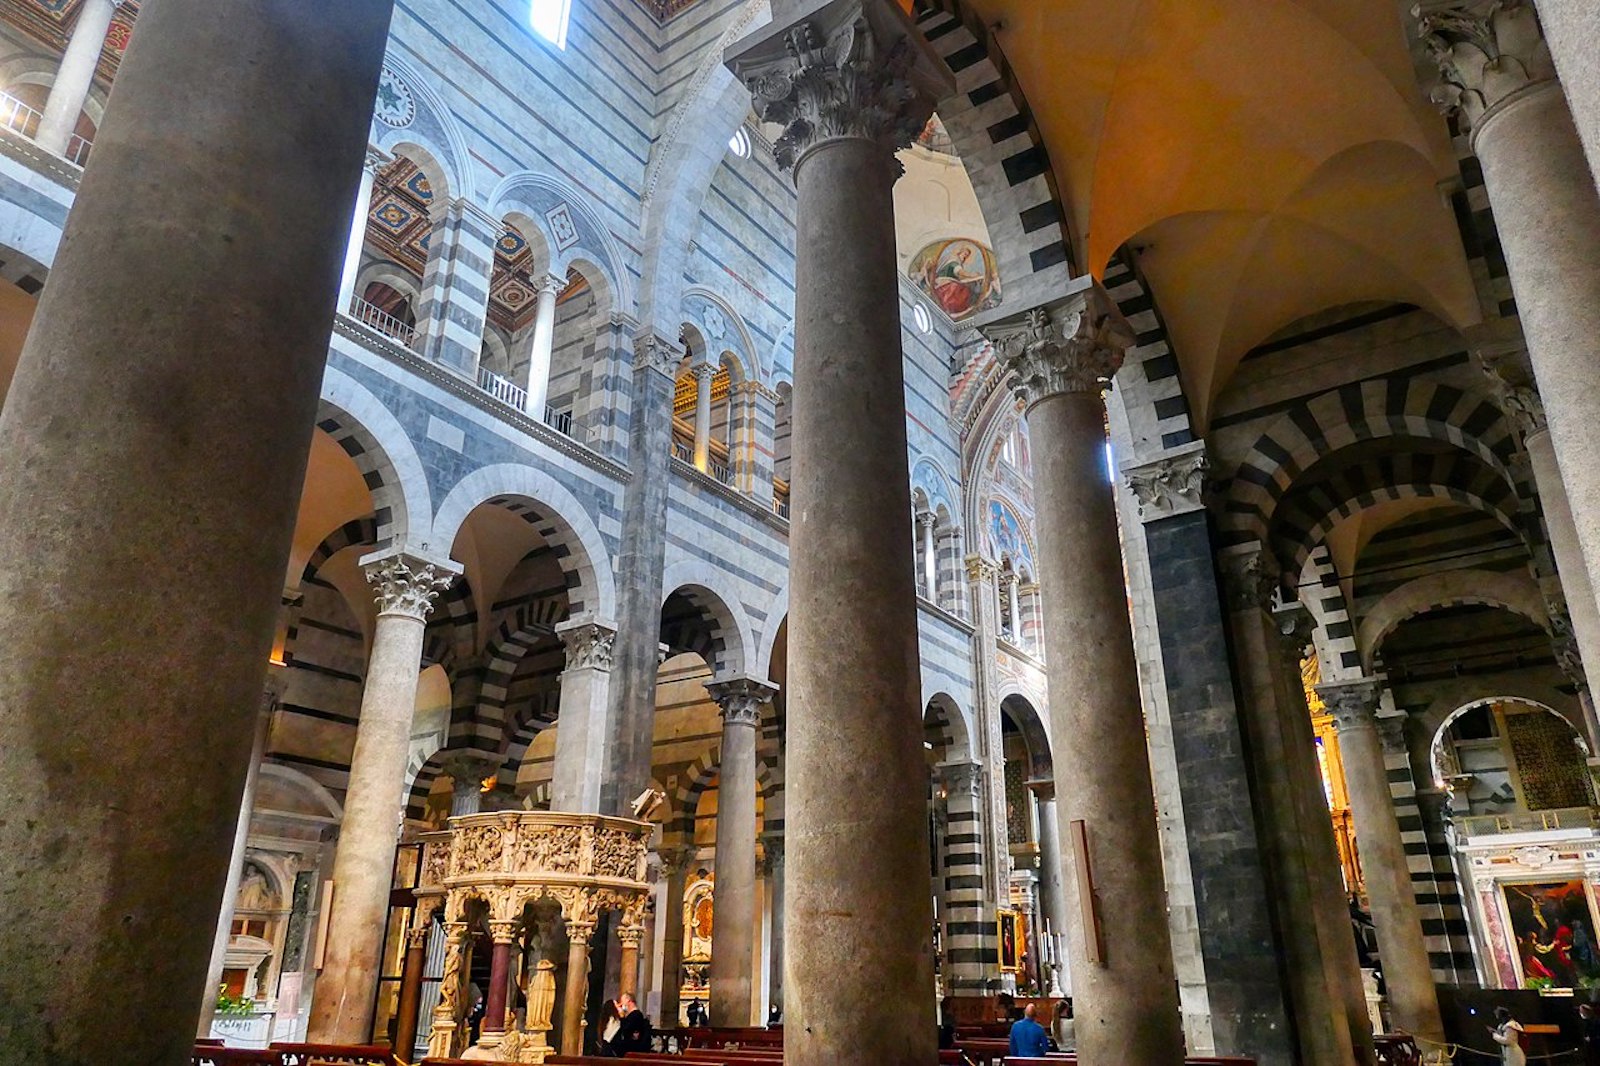 Nouvel An pisan - cathédrale